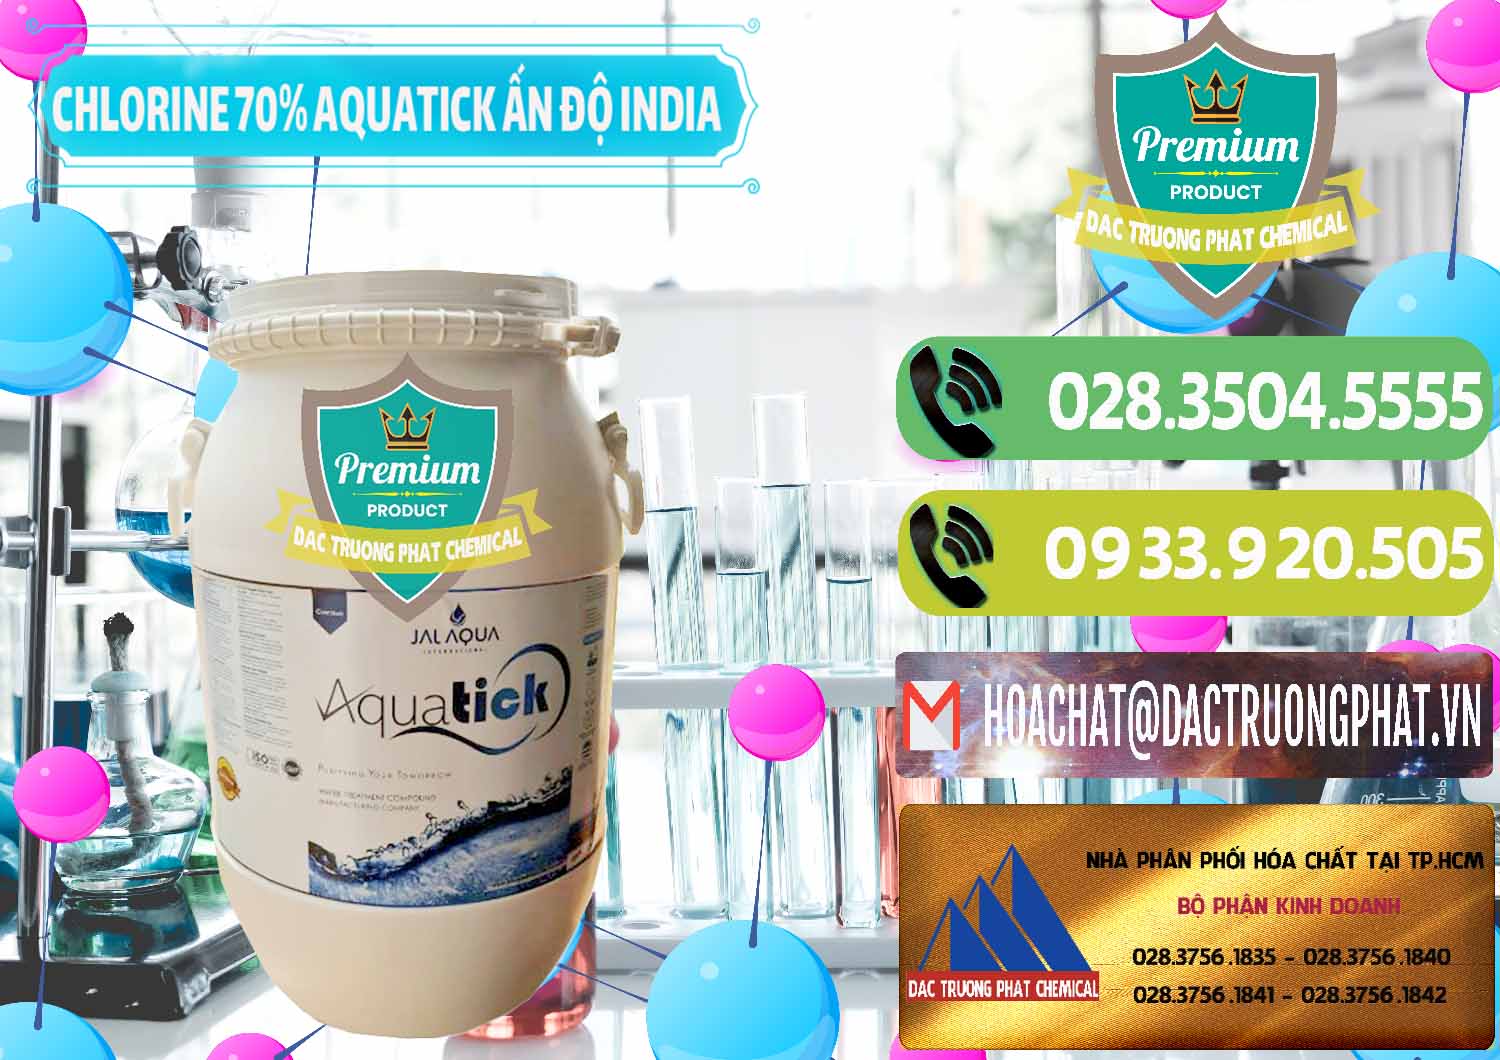 Nơi chuyên bán & cung cấp Chlorine – Clorin 70% Aquatick Jal Aqua Ấn Độ India - 0215 - Cty chuyên cung cấp ( nhập khẩu ) hóa chất tại TP.HCM - hoachatmientay.vn